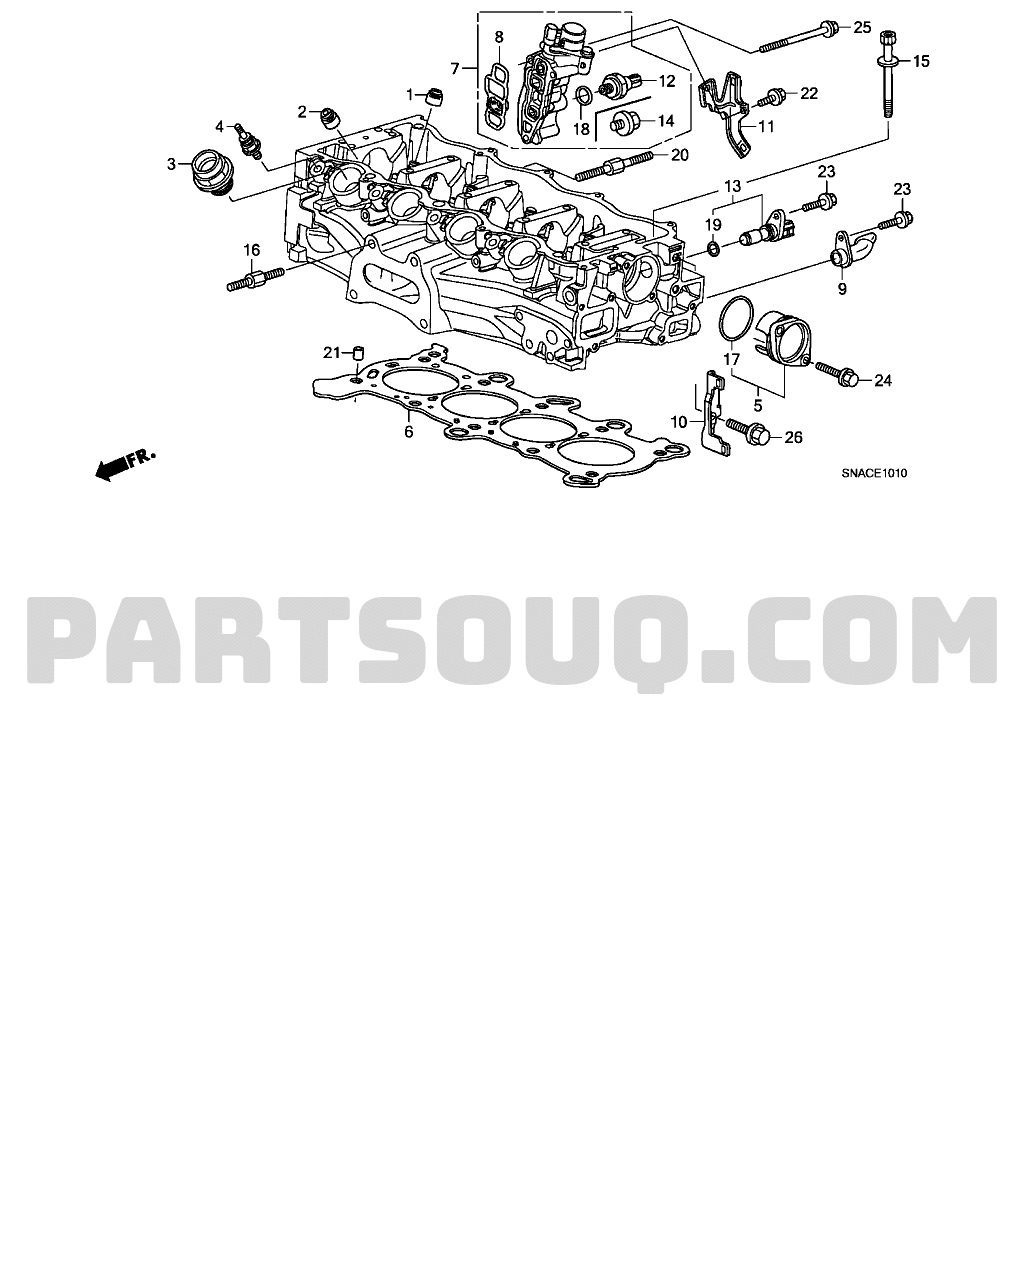 ENGINE | Honda CIVIC USA 2010 Parts Catalogs | PartSouq